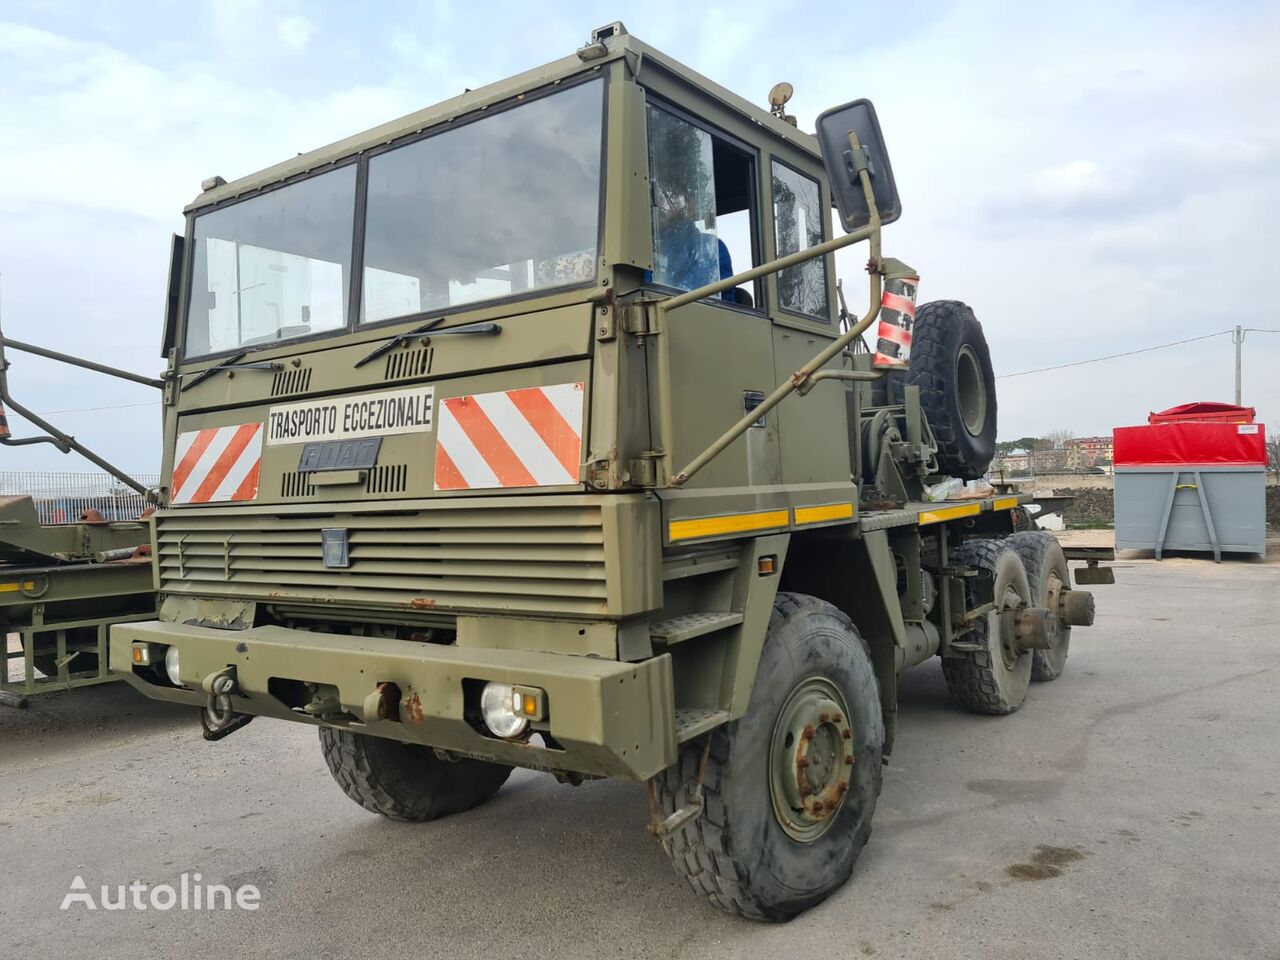 FIAT ATC 81 military truck